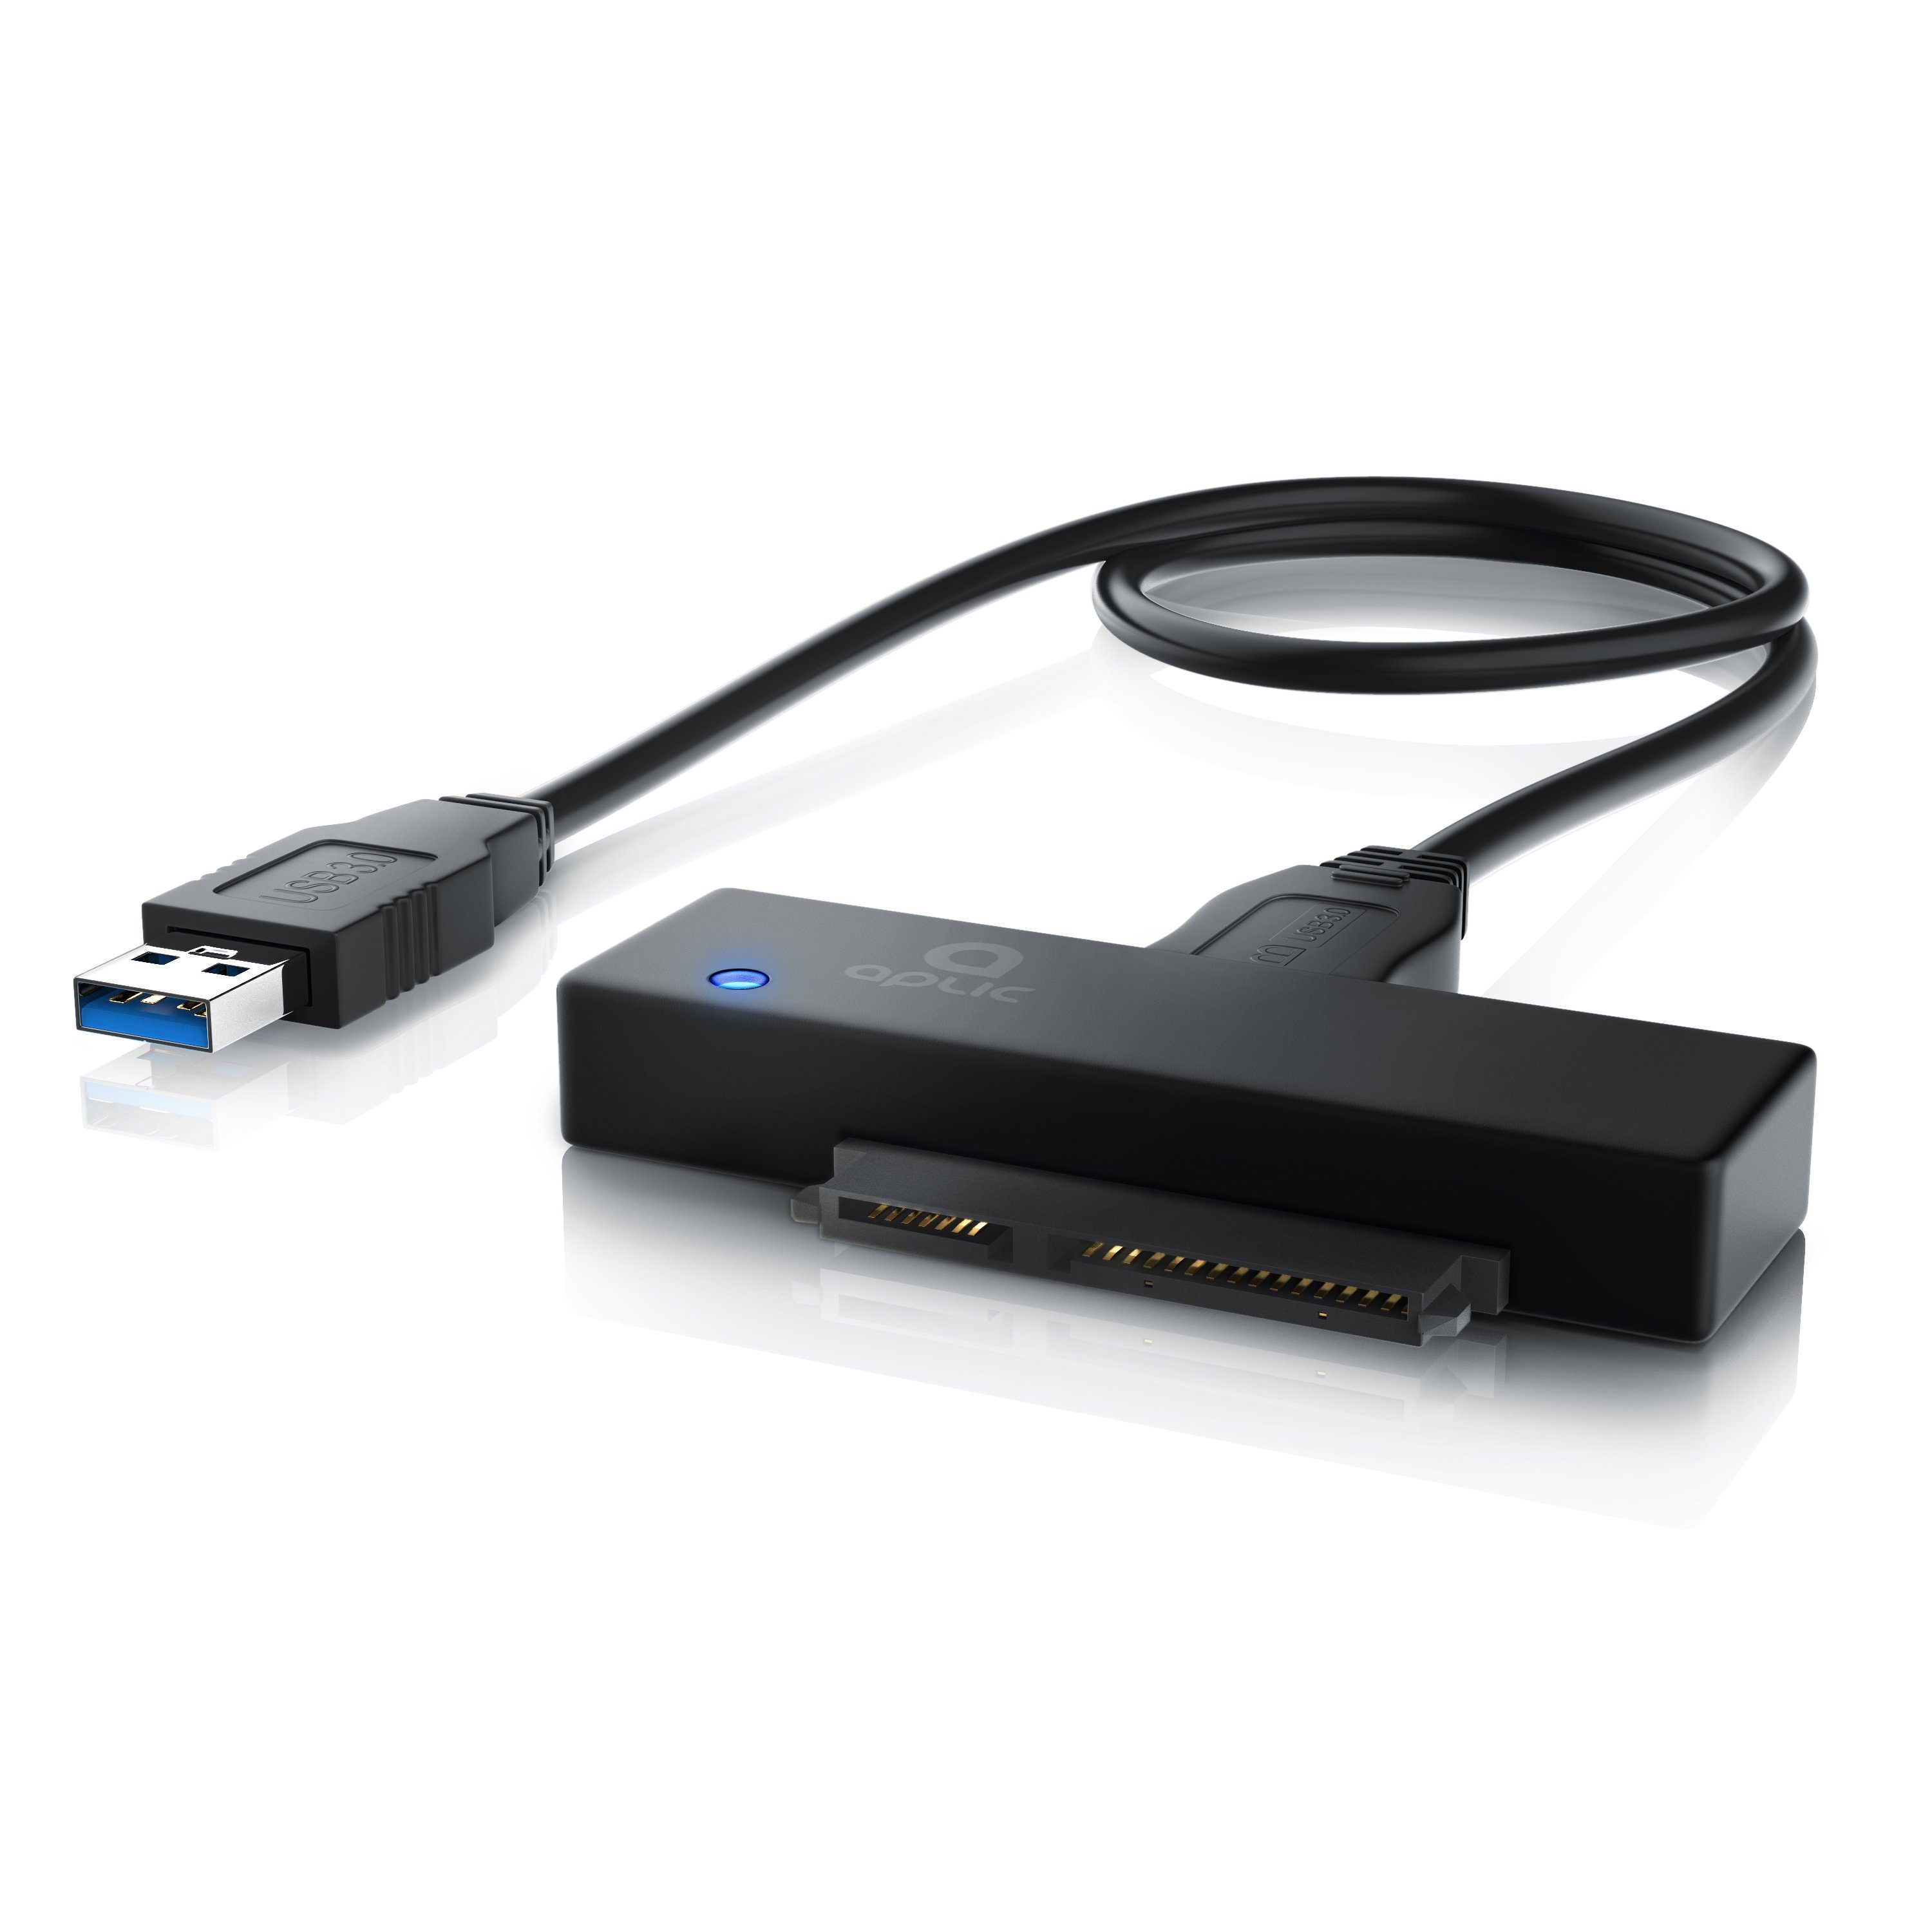 Aplic Computer-Adapter zu SATA 3.0 / 6GB, USB 3.0 Typ A, USB 3.0 zu SATA  1/2/3 Konverter Kabel mit Netzteil für Festplatten